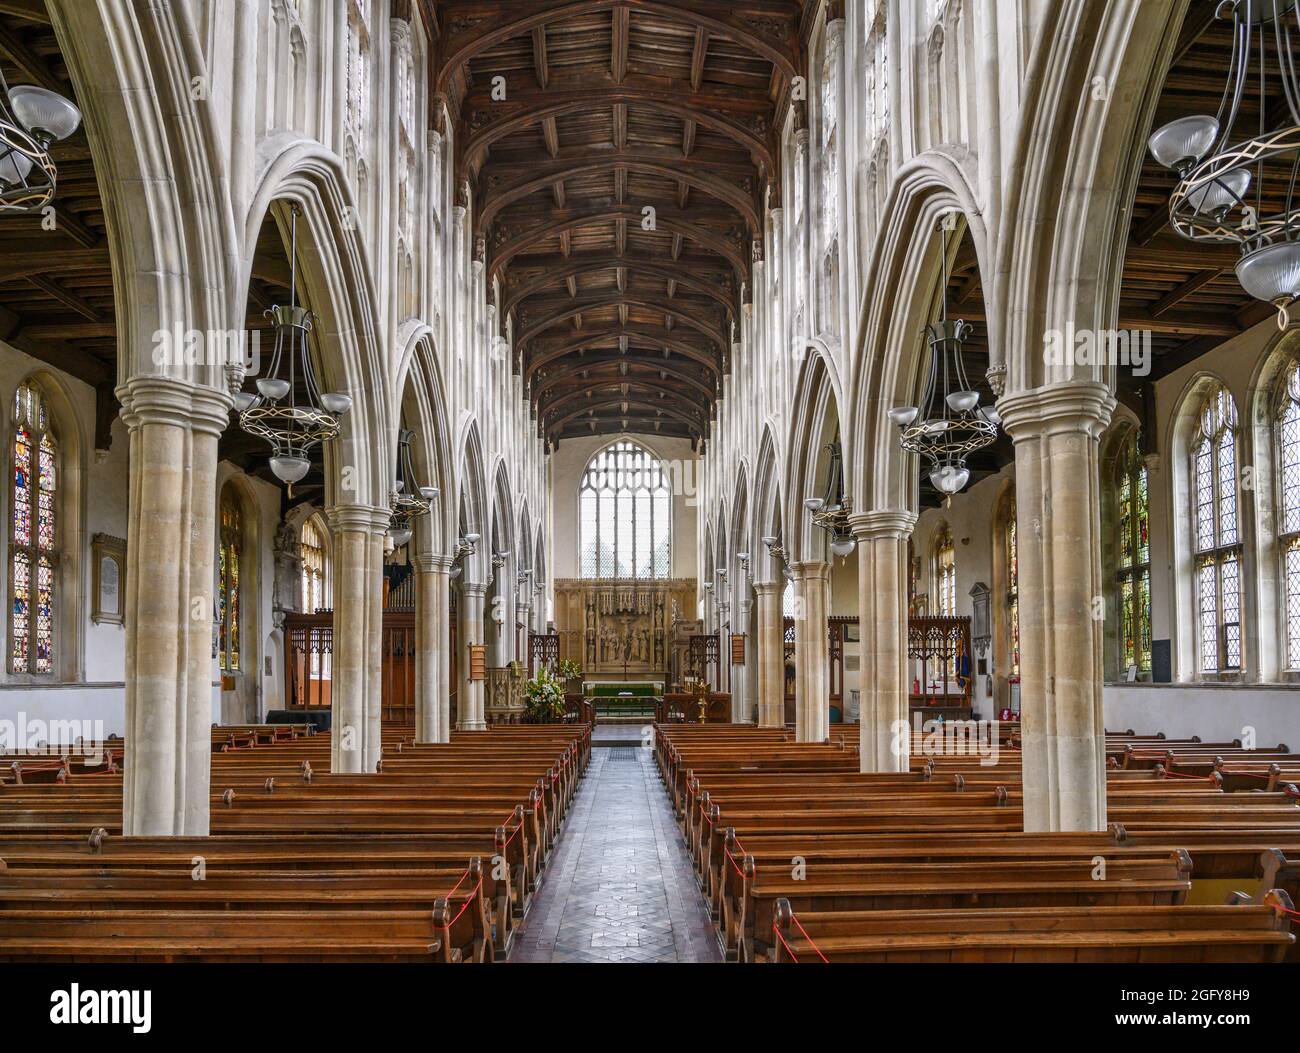 Intérieur de l'église Sainte-Trinité, long Melford, Suffolk, East Anglia, Angleterre, ROYAUME-UNI Banque D'Images